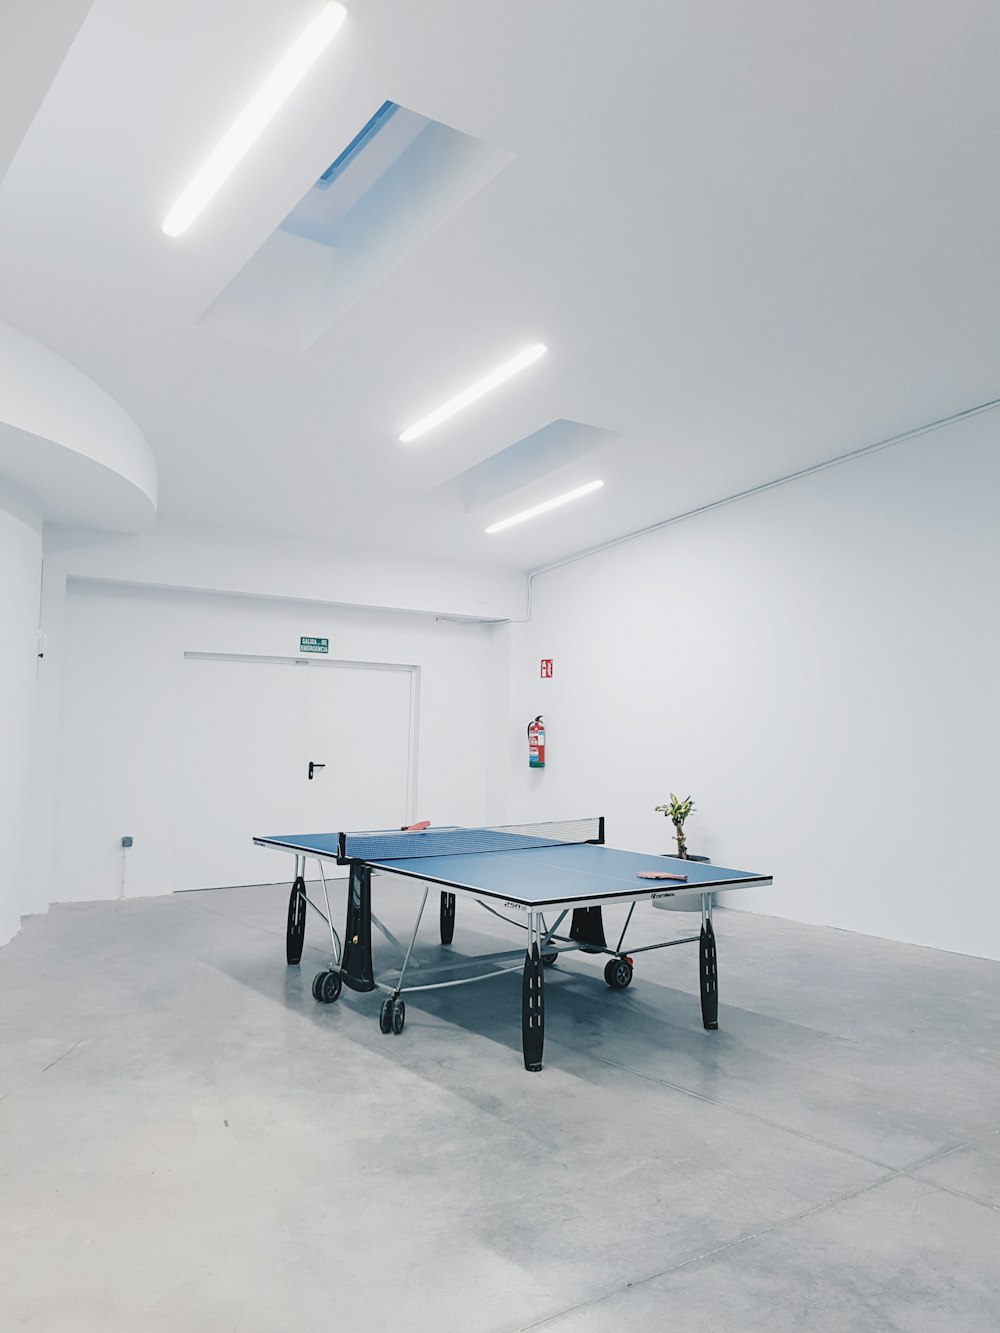 Fotografía de tenis de mesa azul dentro de una habitación